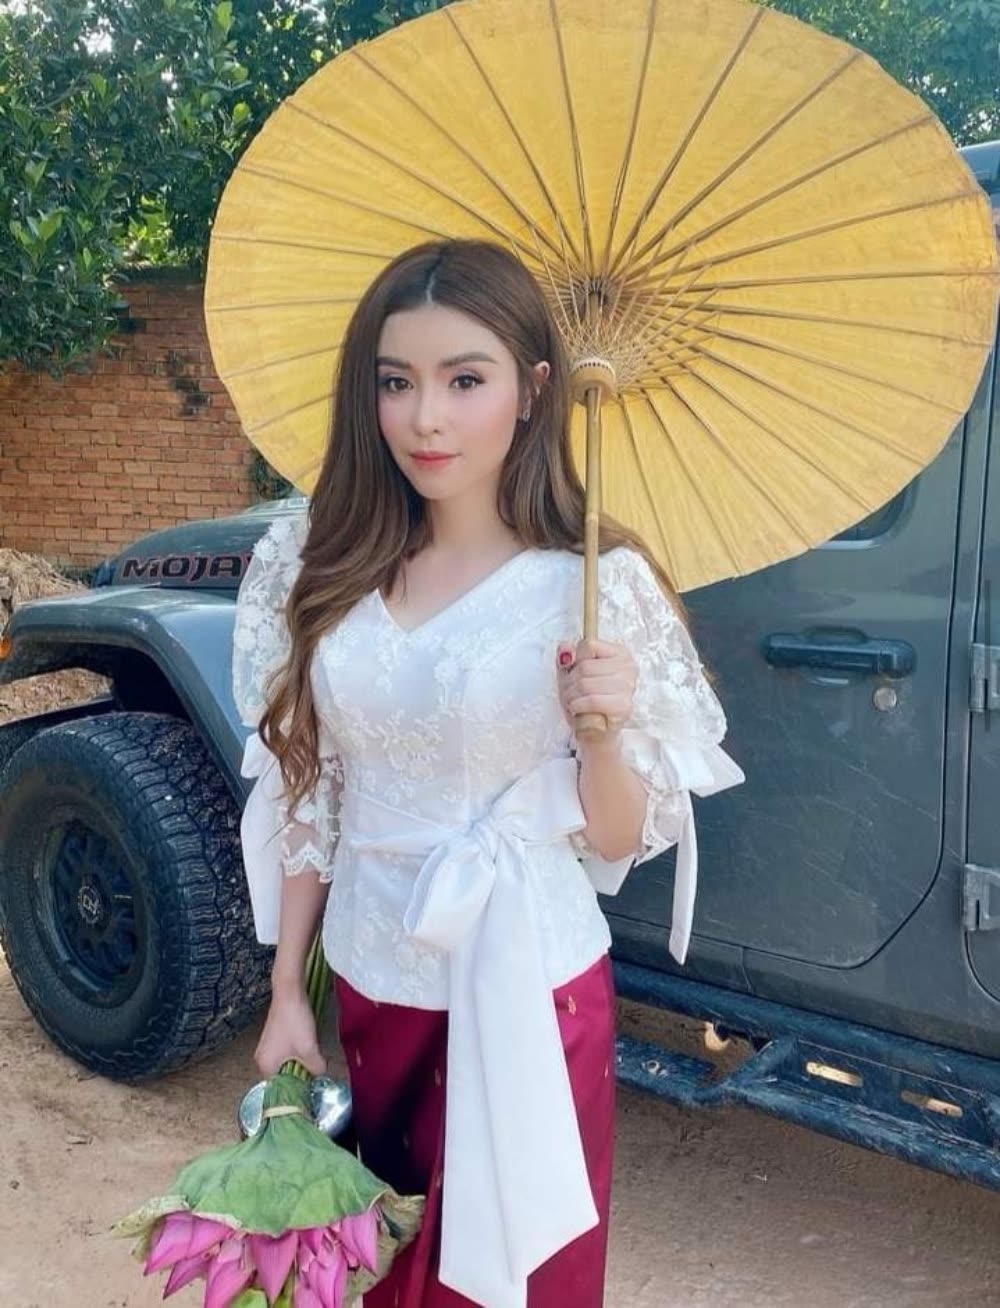 各有千秋!柬埔寨著名女星穿传统服装来个大比拼